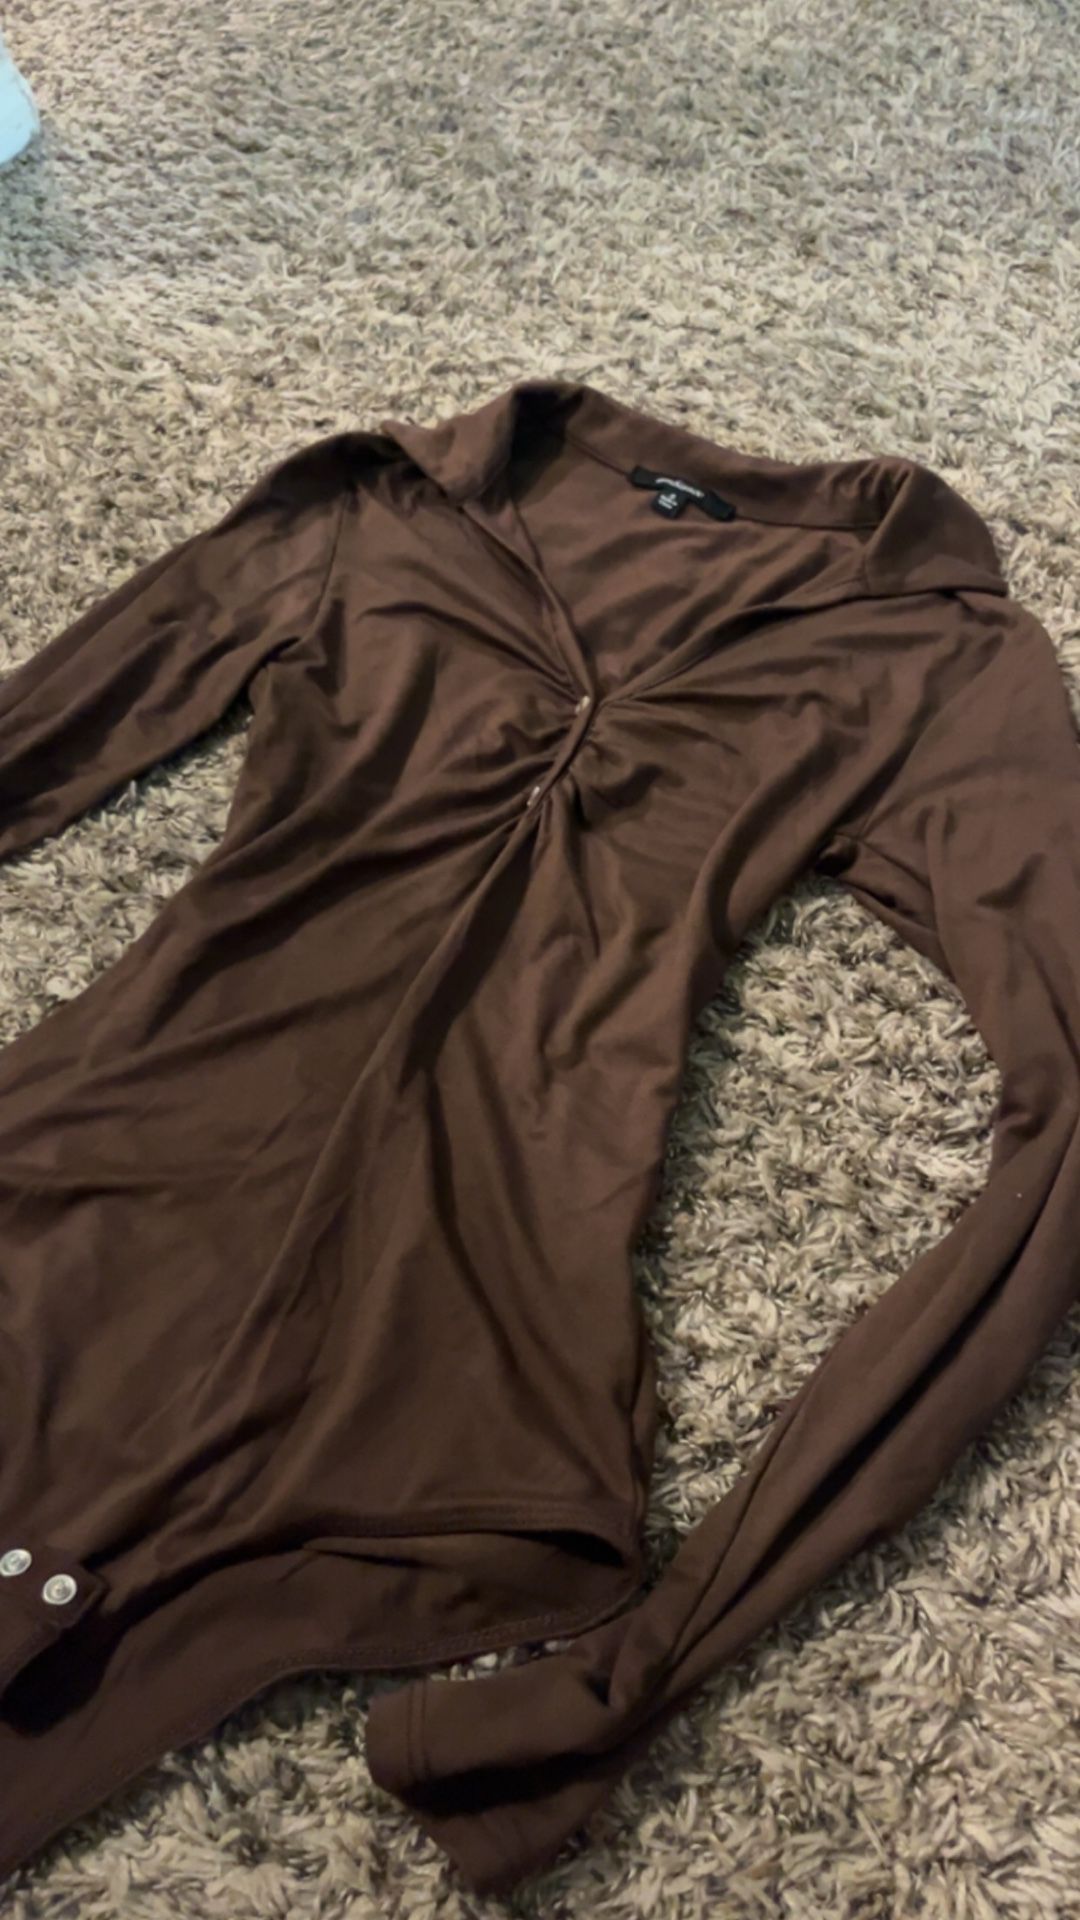 Brown Bodysuit